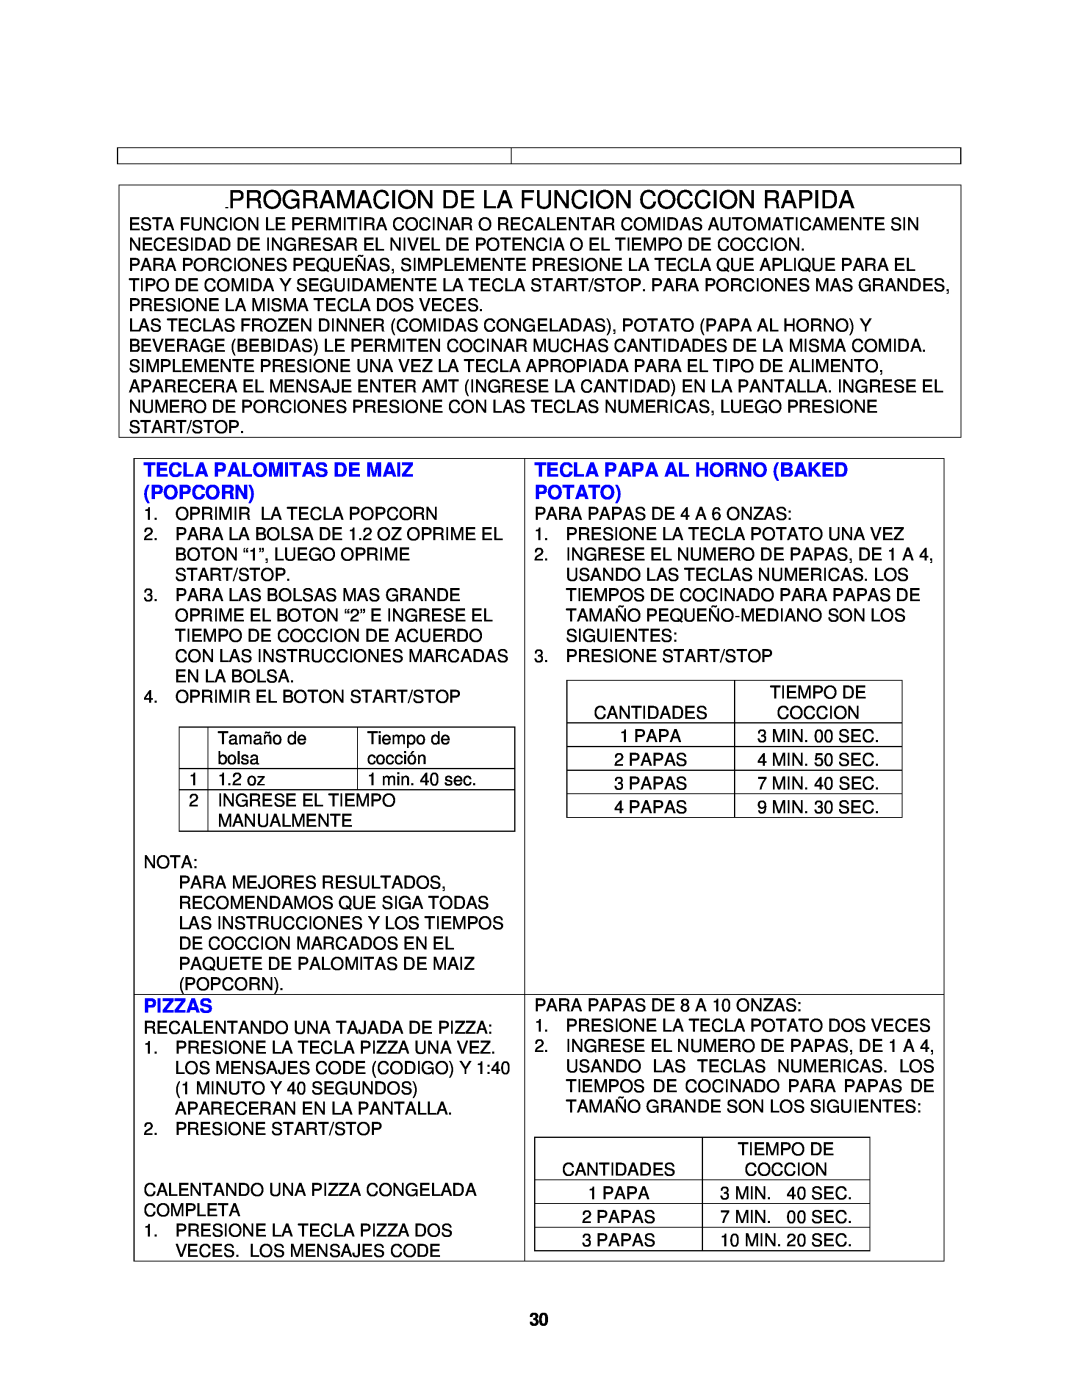 Avanti MO1450TW Programacion De La Funcion Coccion Rapida, Tecla Palomitas De Maiz, Tecla Papa Al Horno Baked, Popcorn 